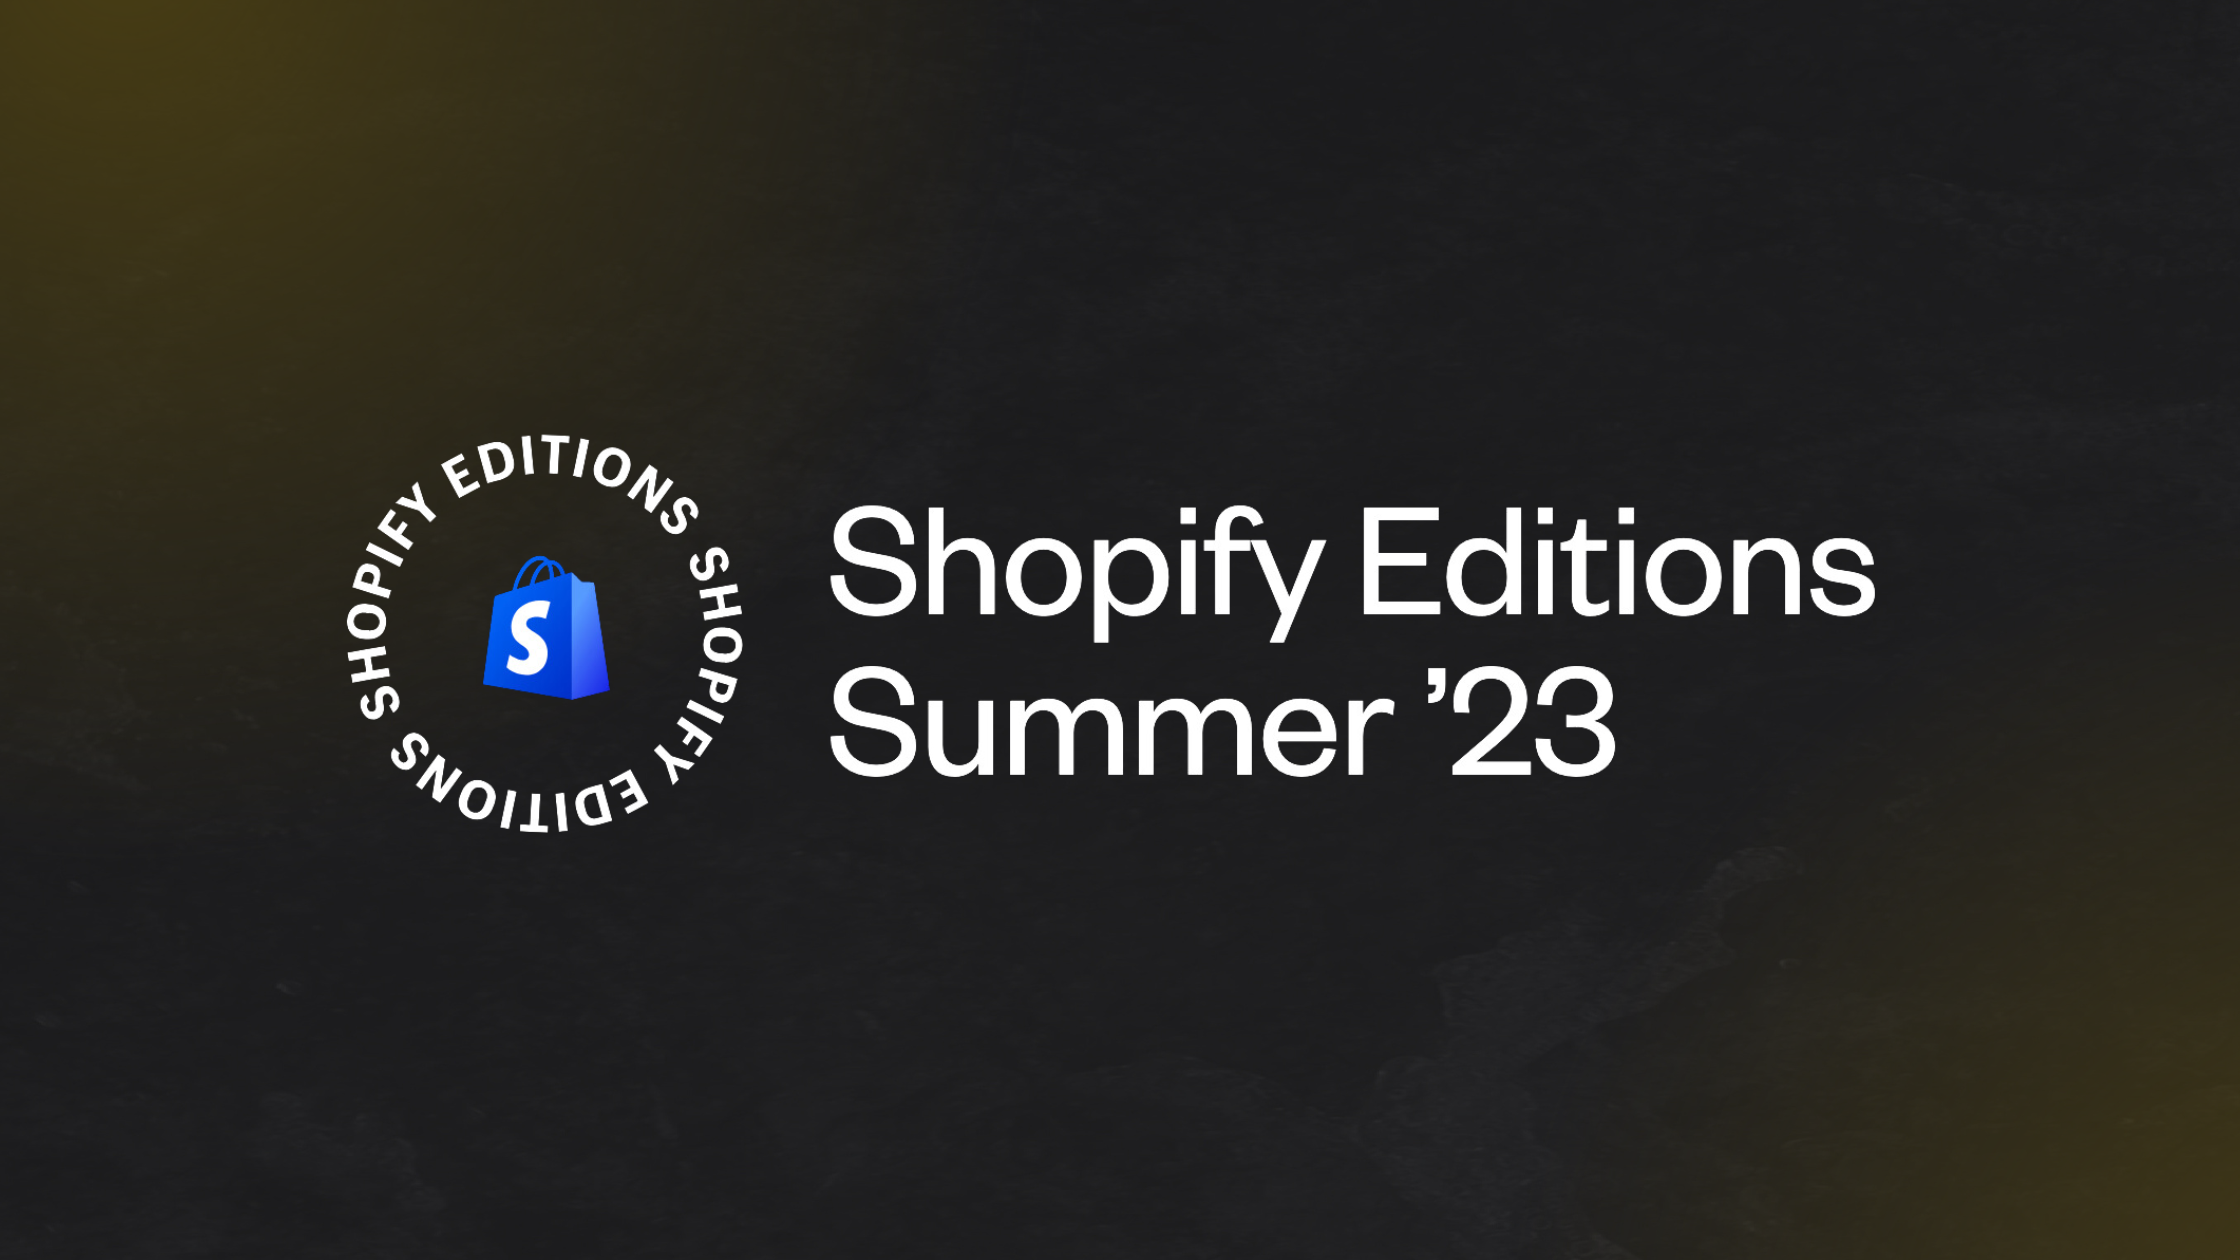 Shopify Magic、AIコマースアシスタントなど「Shopify Editions Summer ‘23で」でリリースした新機能とアプリをまとめた。